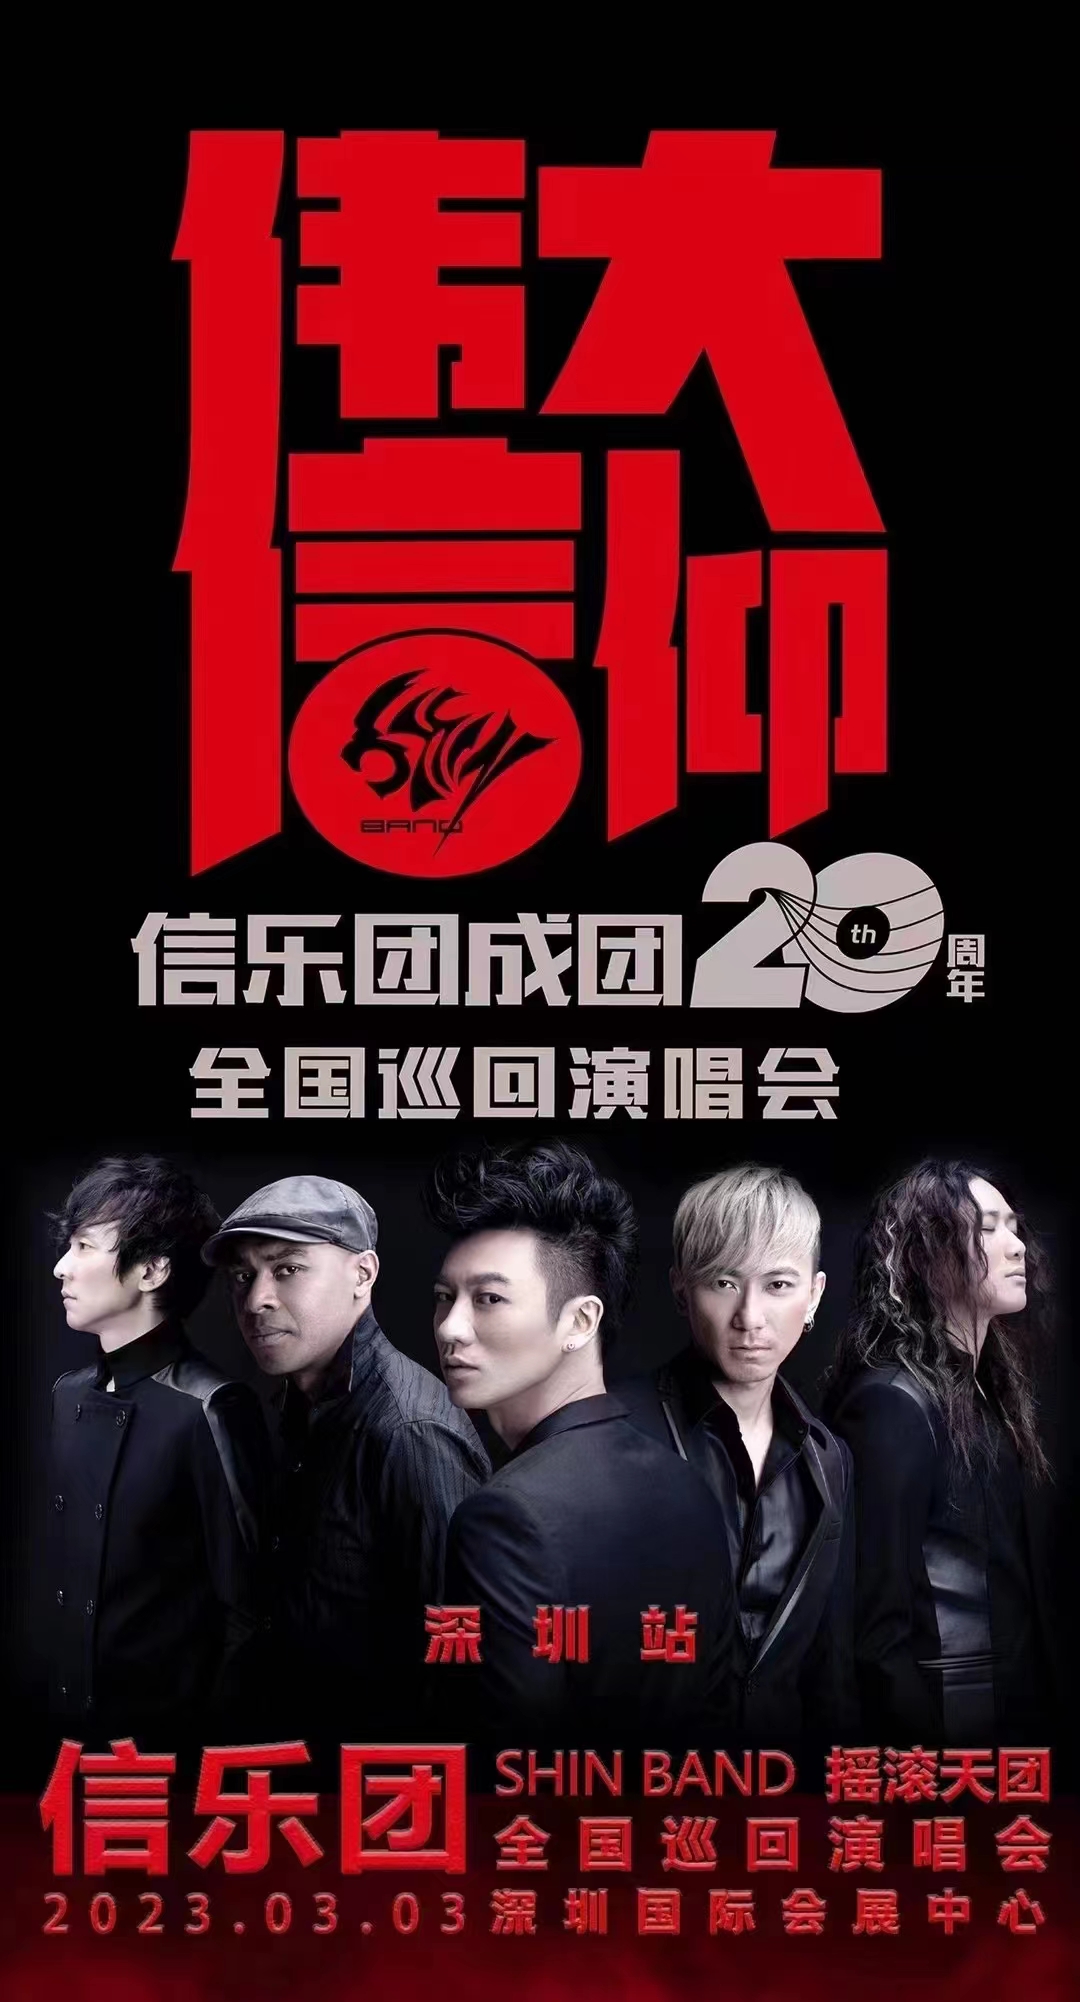 2023信乐团深圳演唱会时间安排、门票价格、订票网址